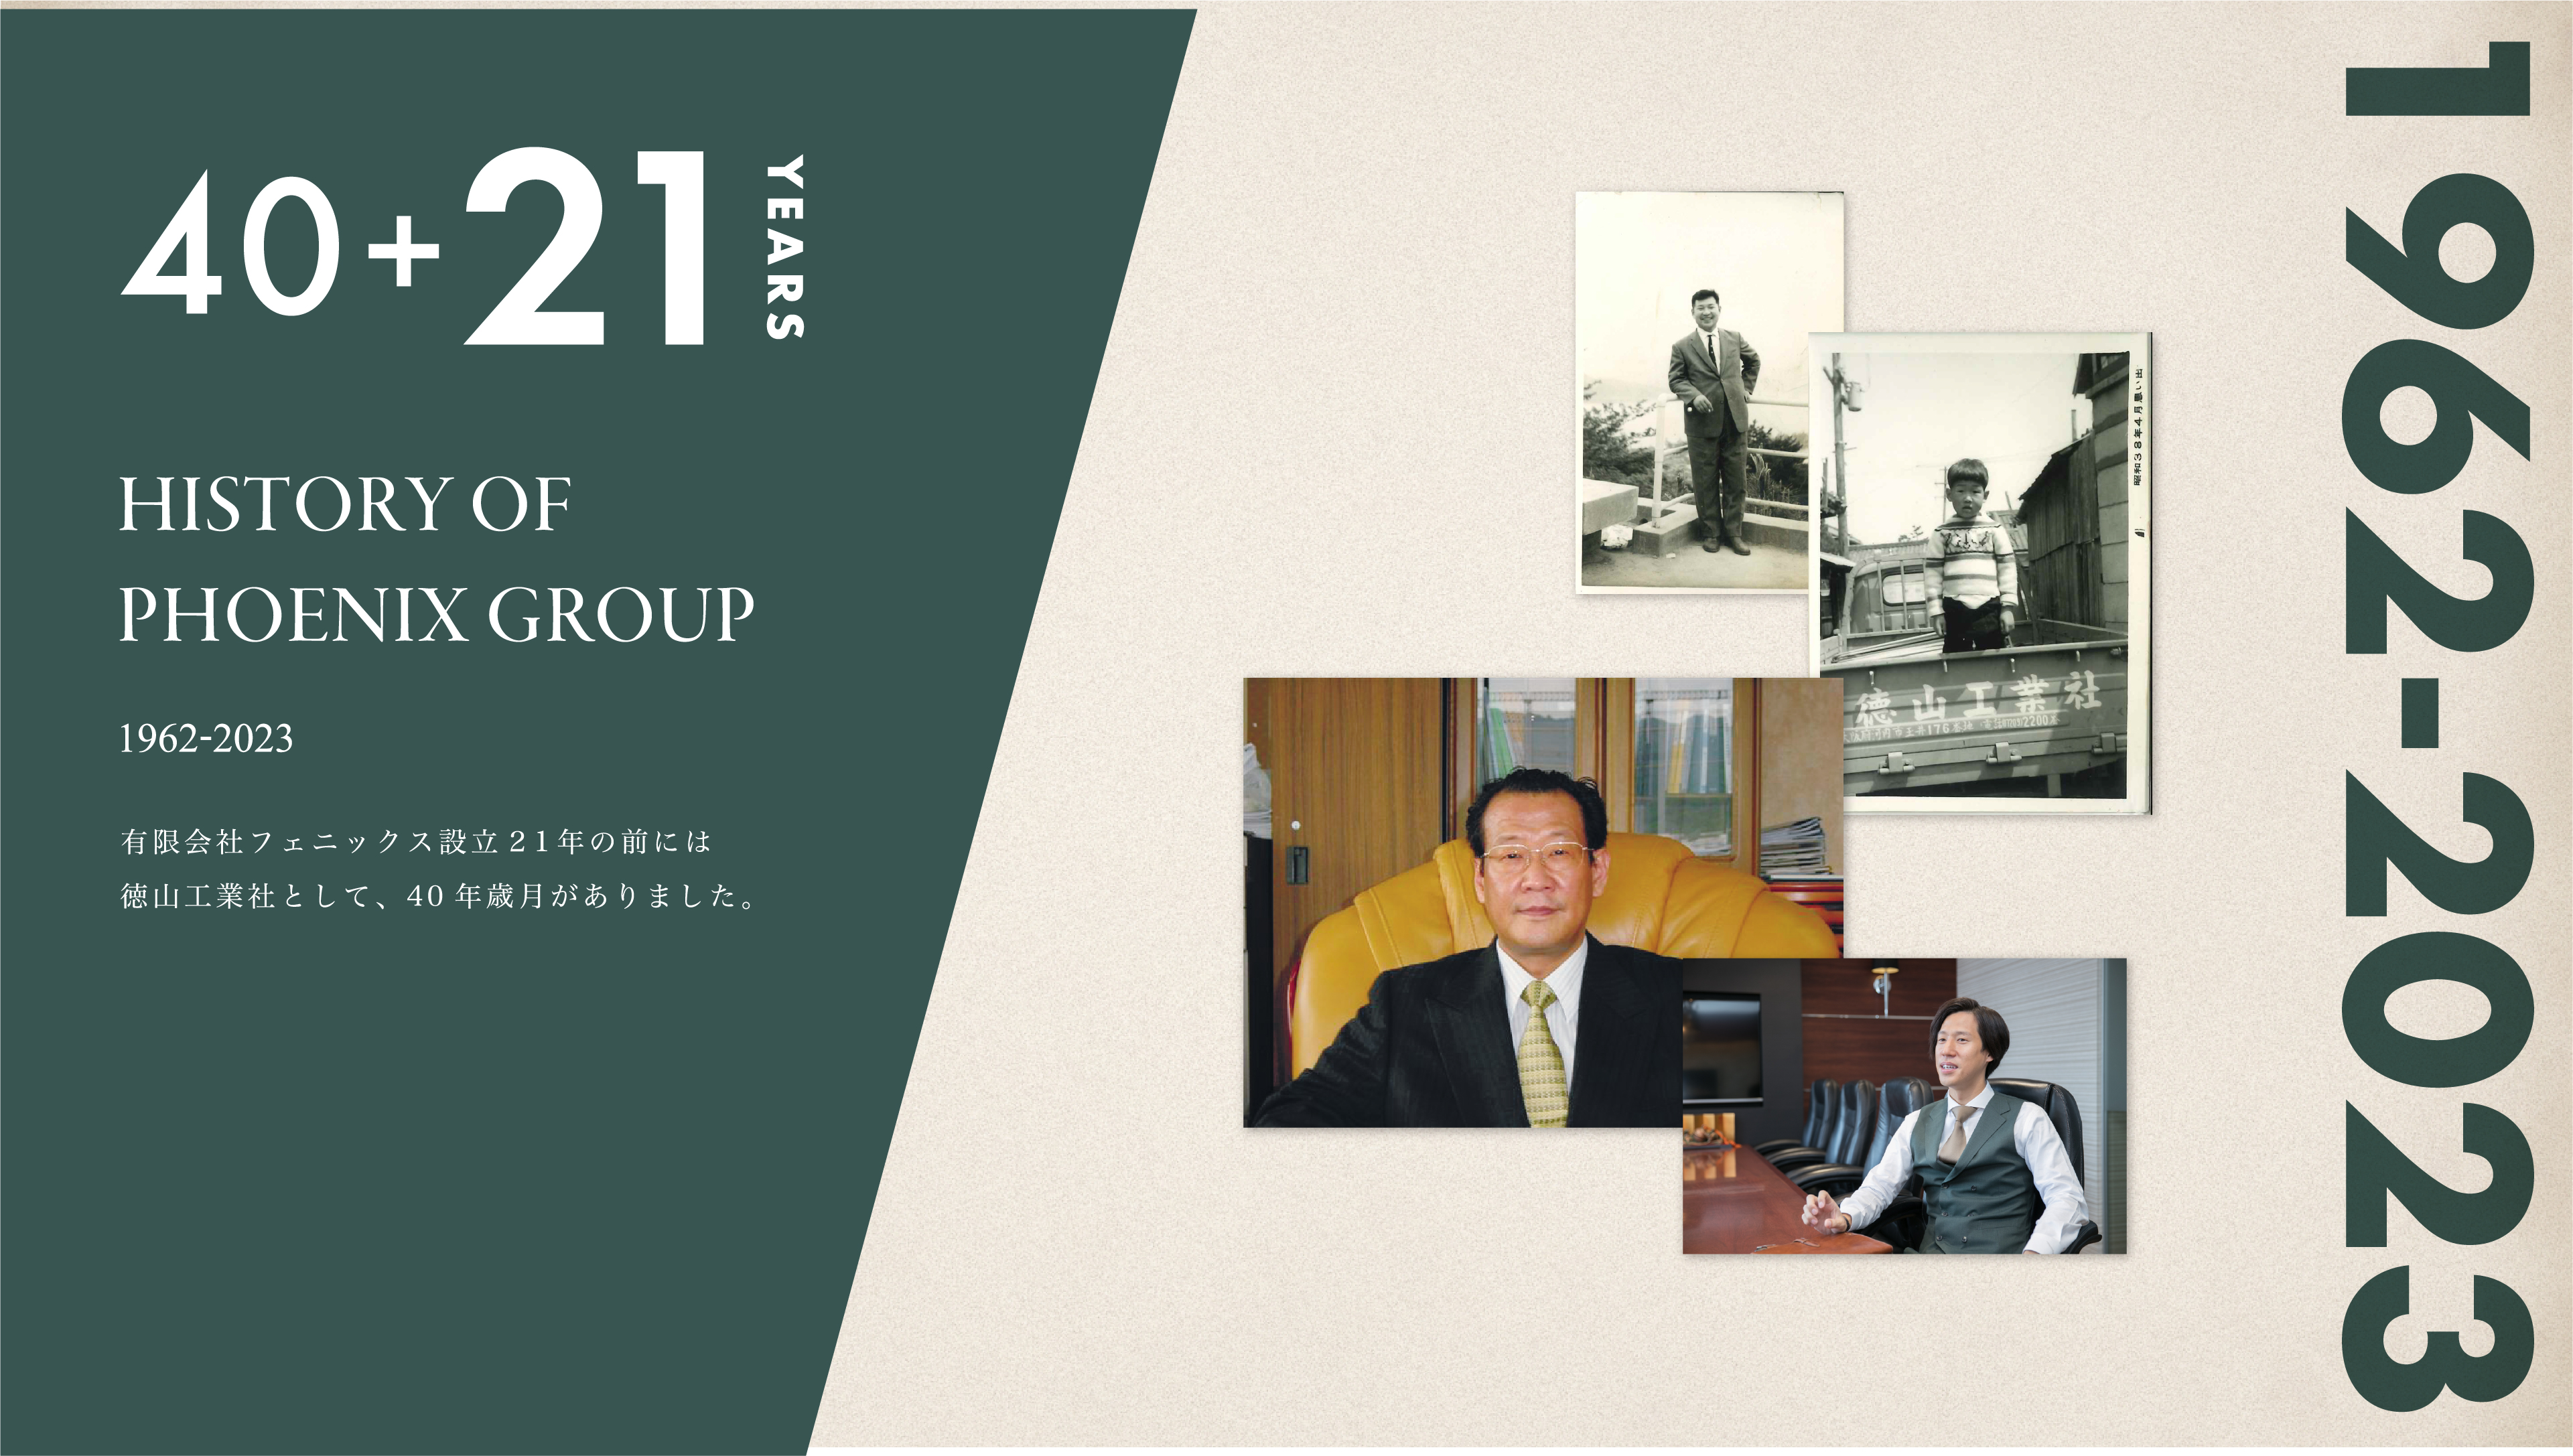 有限会社フェニックス設立20年の前には、 徳山工業社として、40年という歳月がありました。